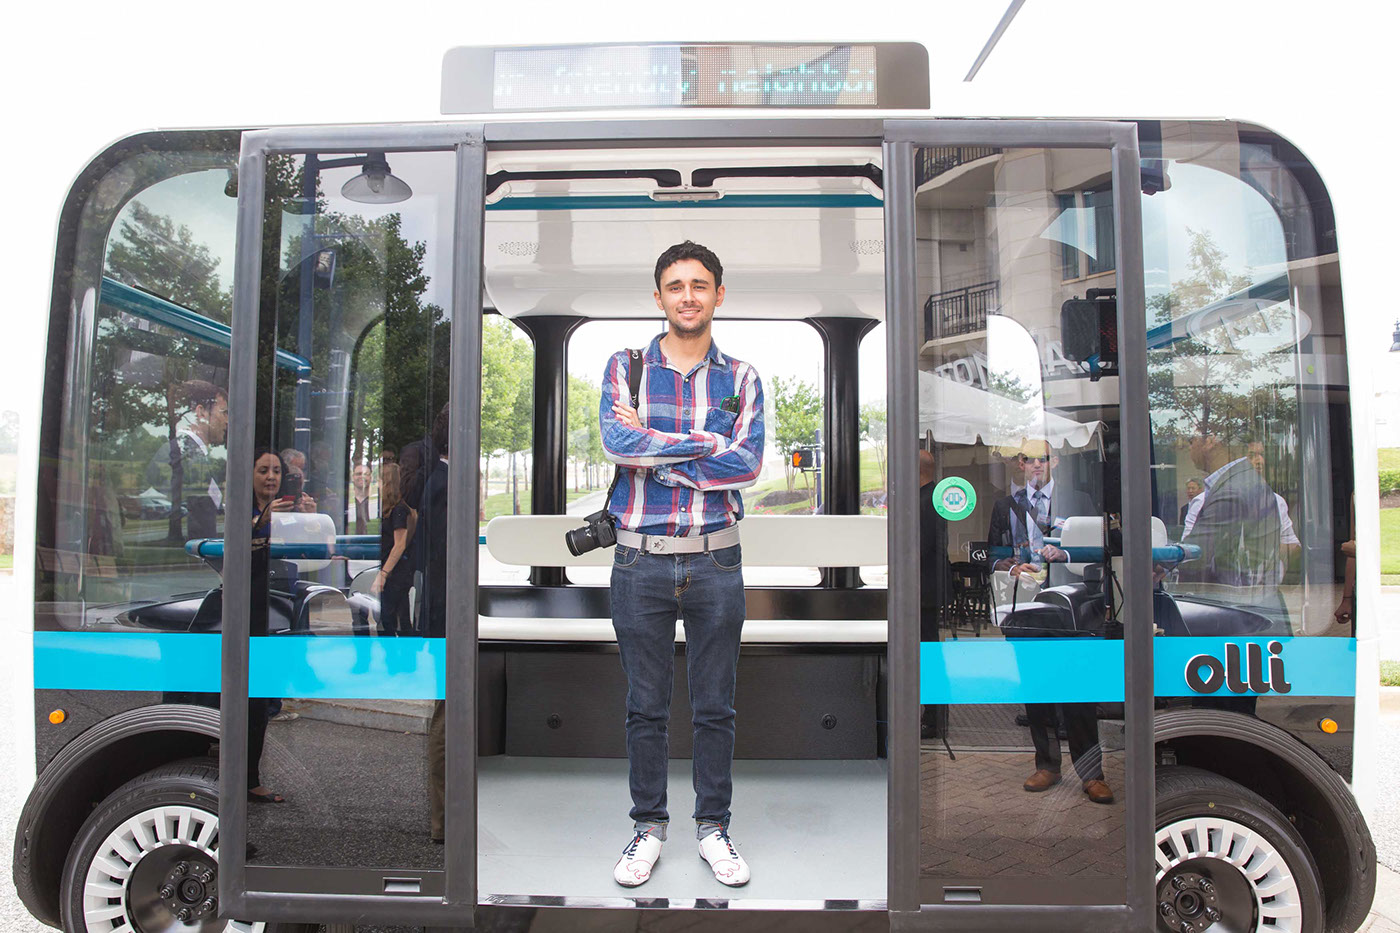 olli Local Motors Berlino bus electric shuttle cab concept autonomus futuristic